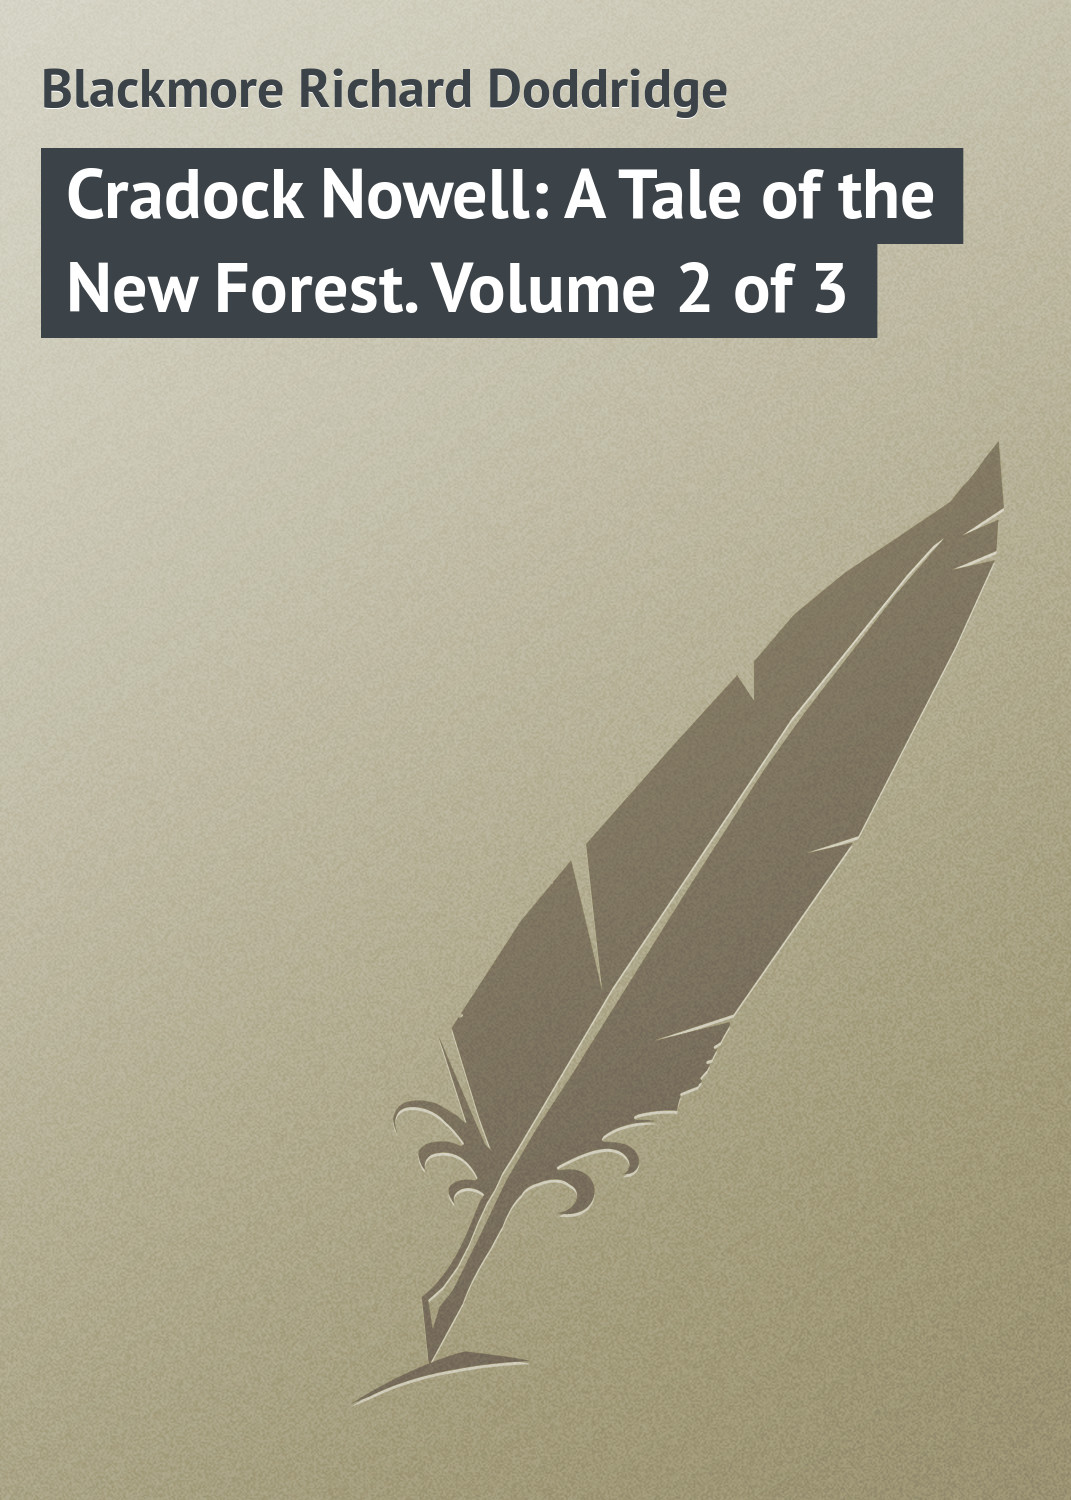 Книга Cradock Nowell: A Tale of the New Forest. Volume 2 of 3 из серии , созданная Richard Blackmore, может относится к жанру Зарубежная классика. Стоимость электронной книги Cradock Nowell: A Tale of the New Forest. Volume 2 of 3 с идентификатором 23148347 составляет 5.99 руб.